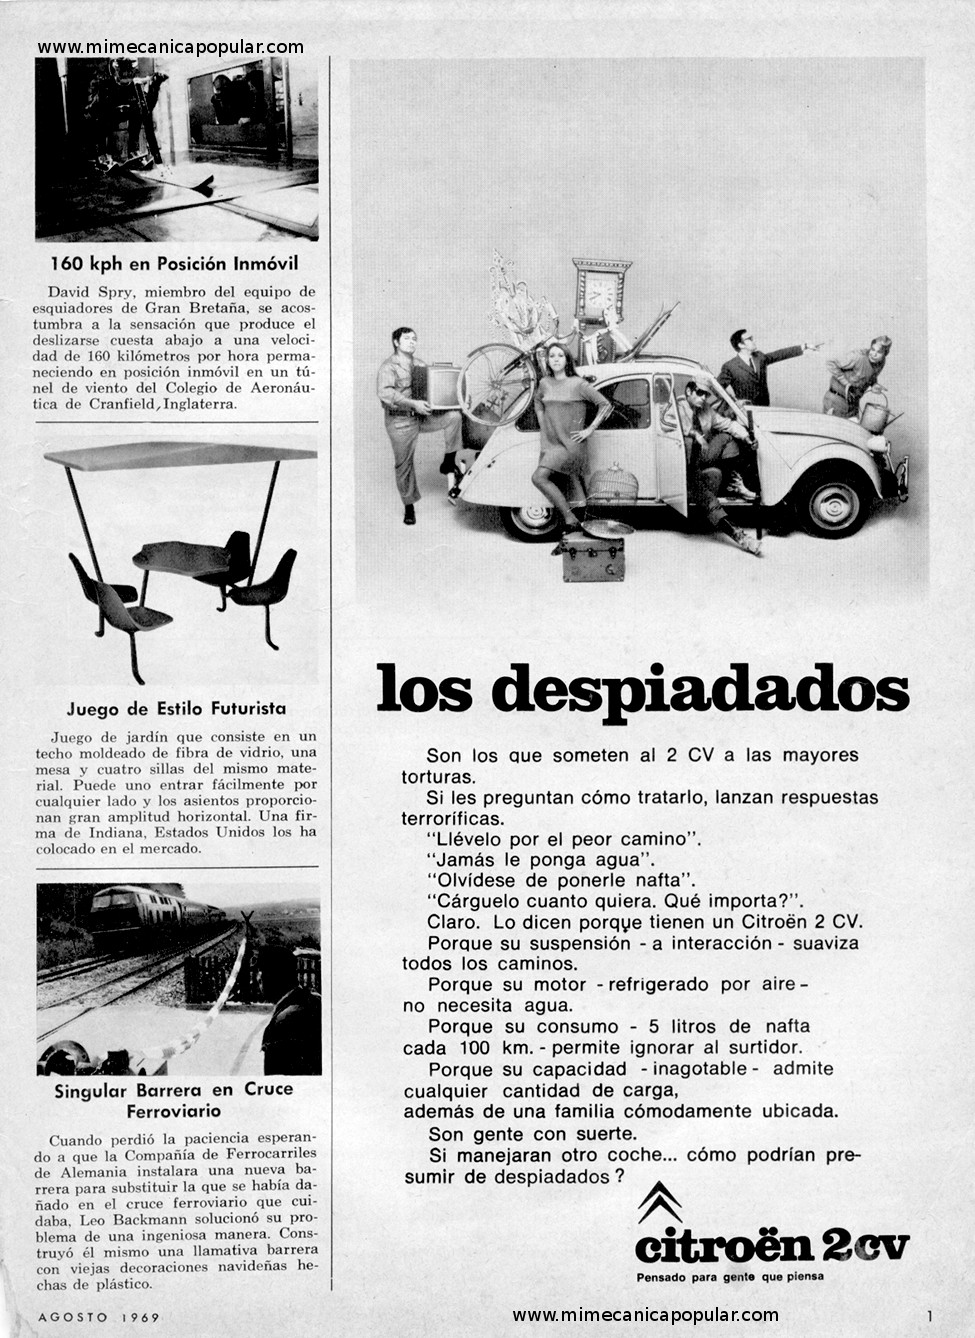 Publicidad - Citroën 2CV - Agosto 1969